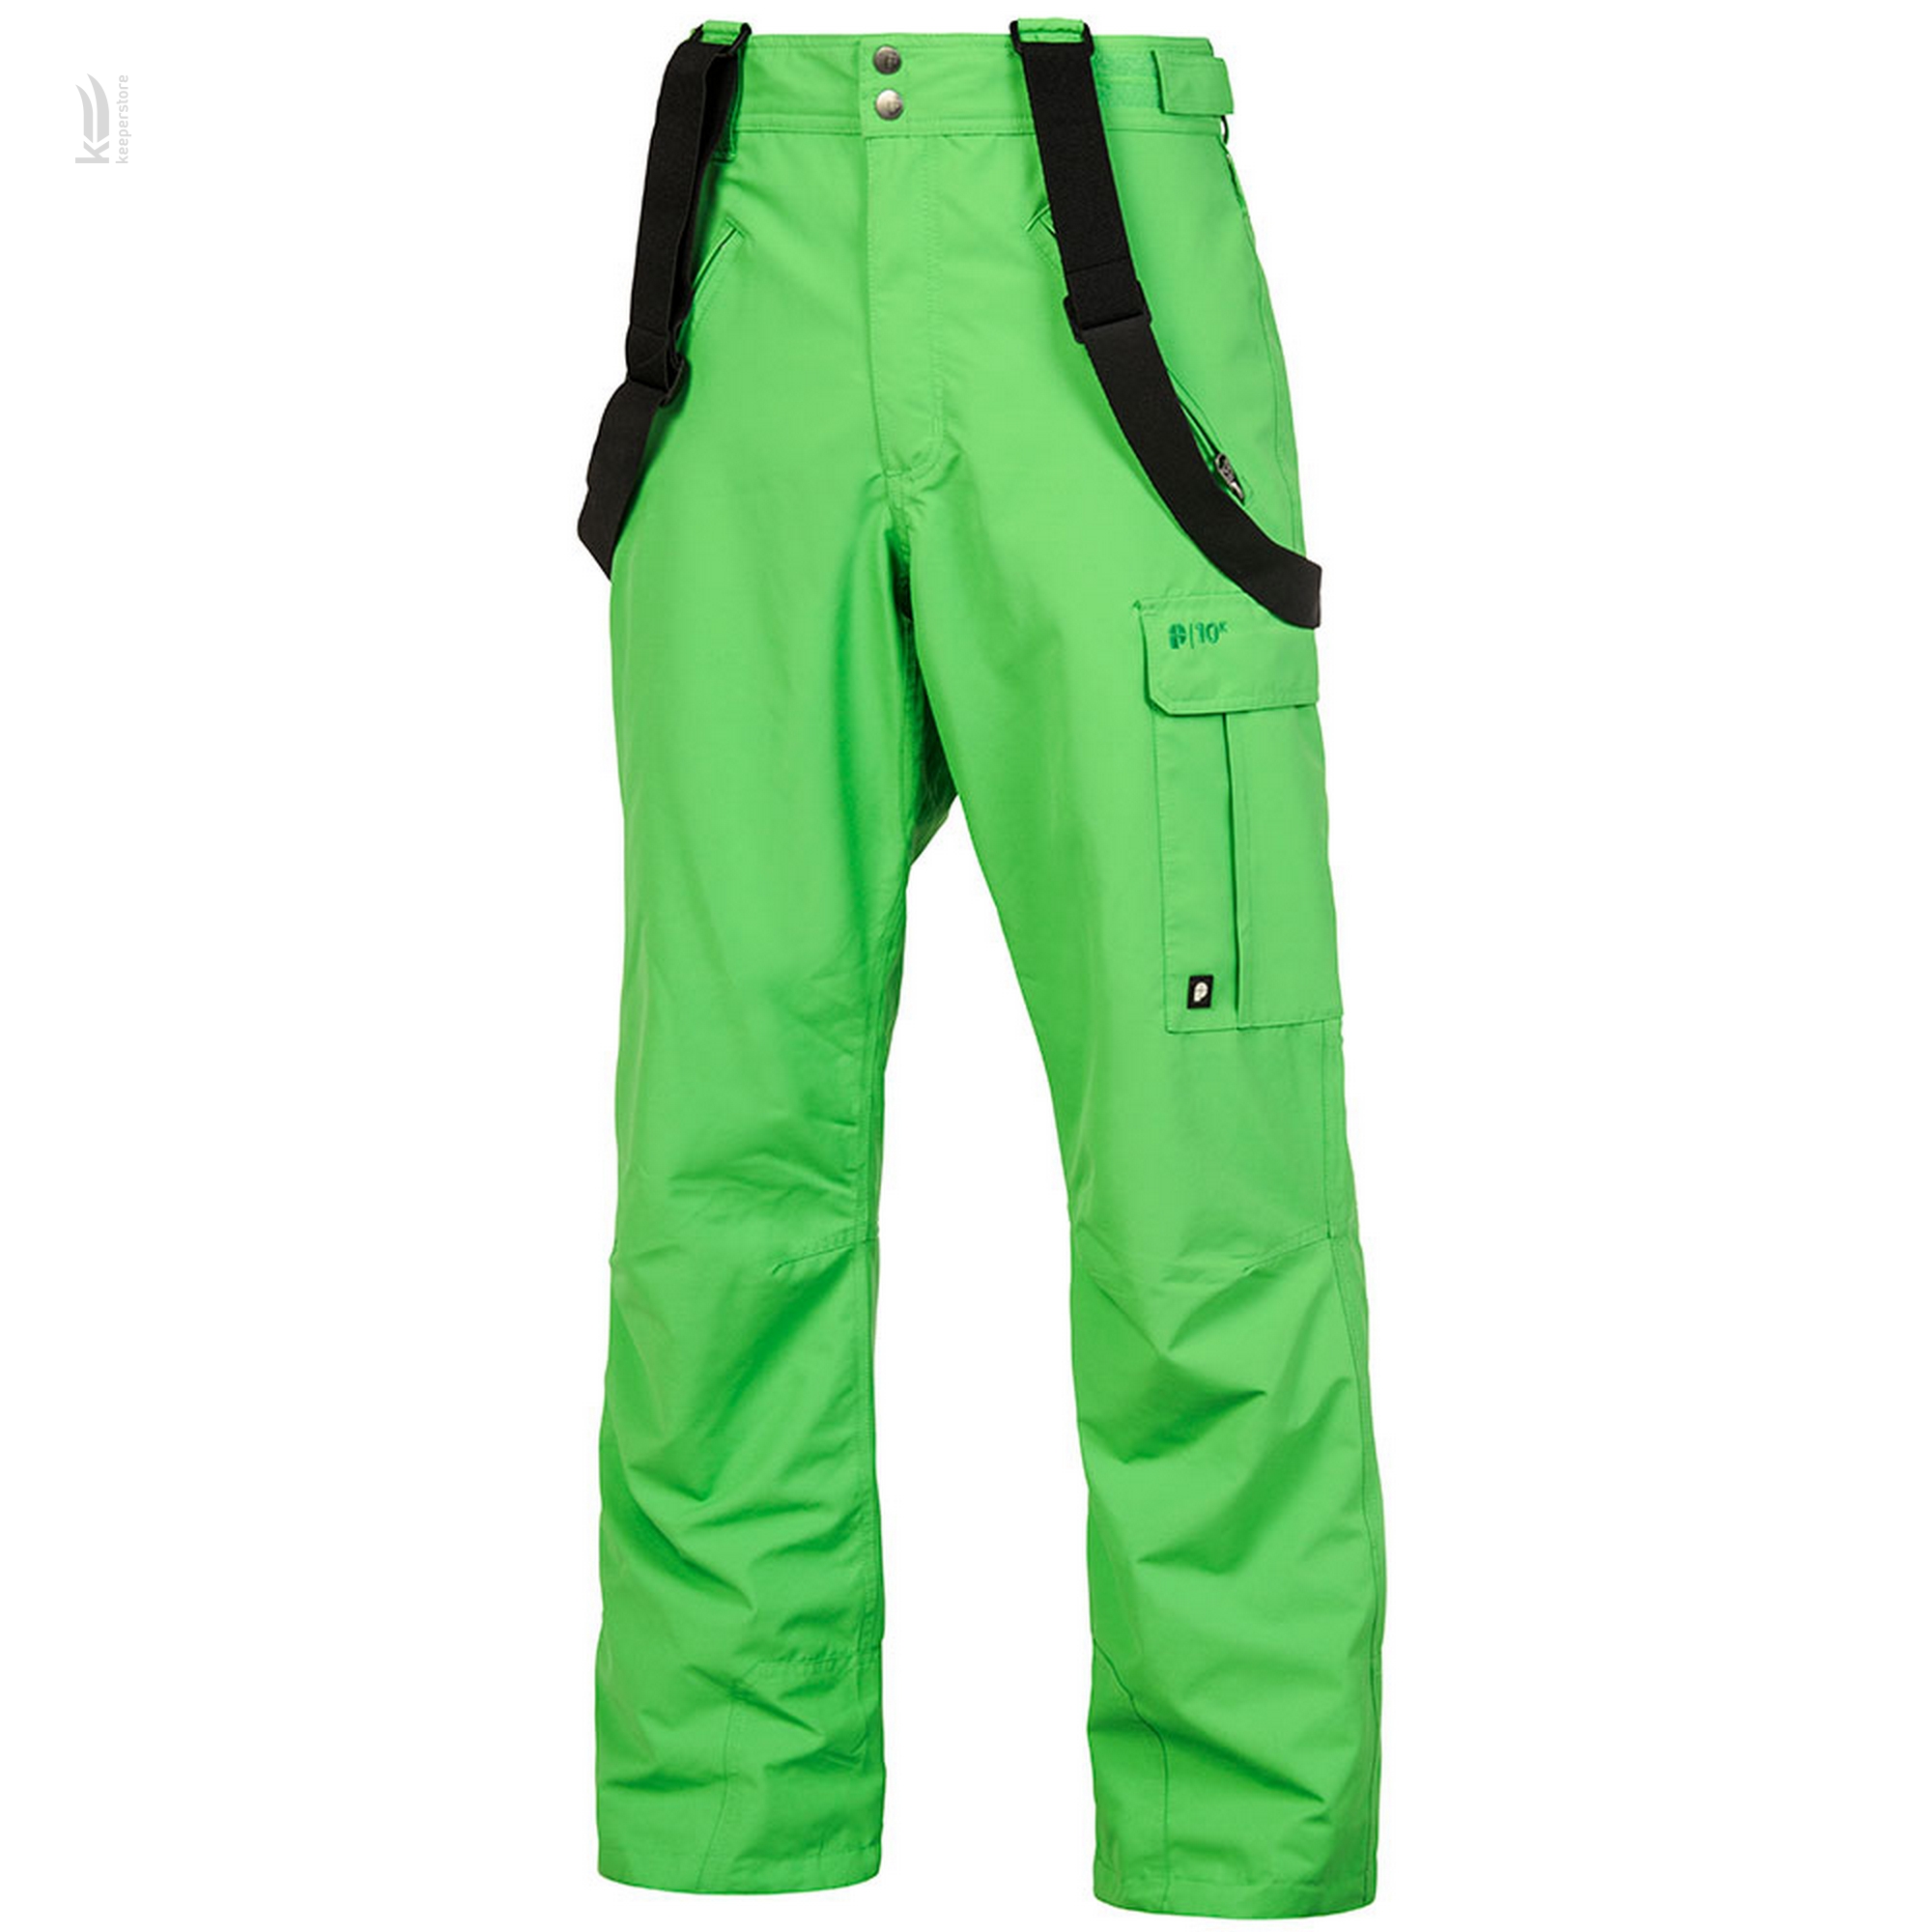 Fasc Monarch Green Pants (M)